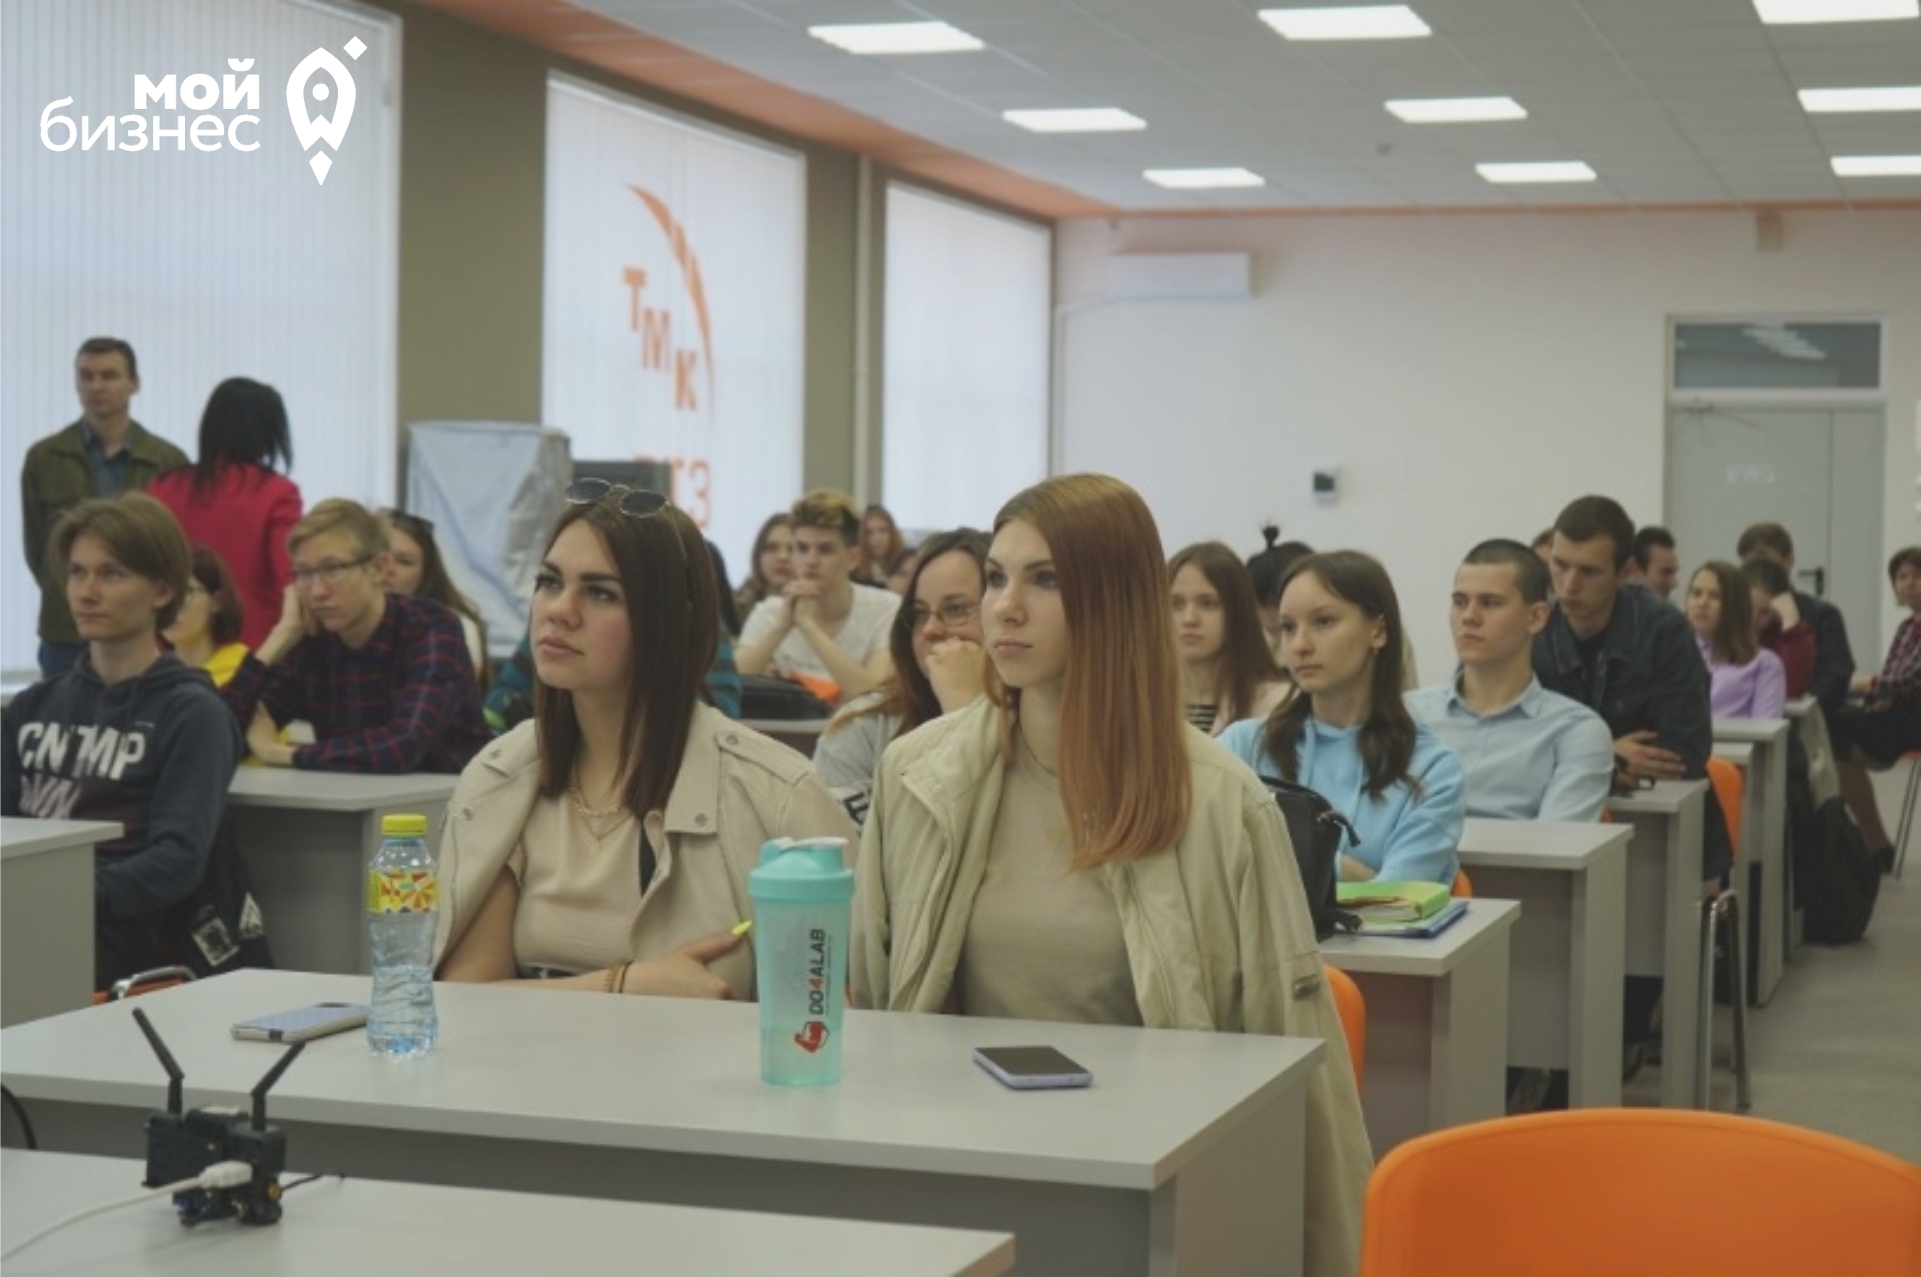 Центр «Мой бизнес» провел встречу со студентами Волжского политехнического института